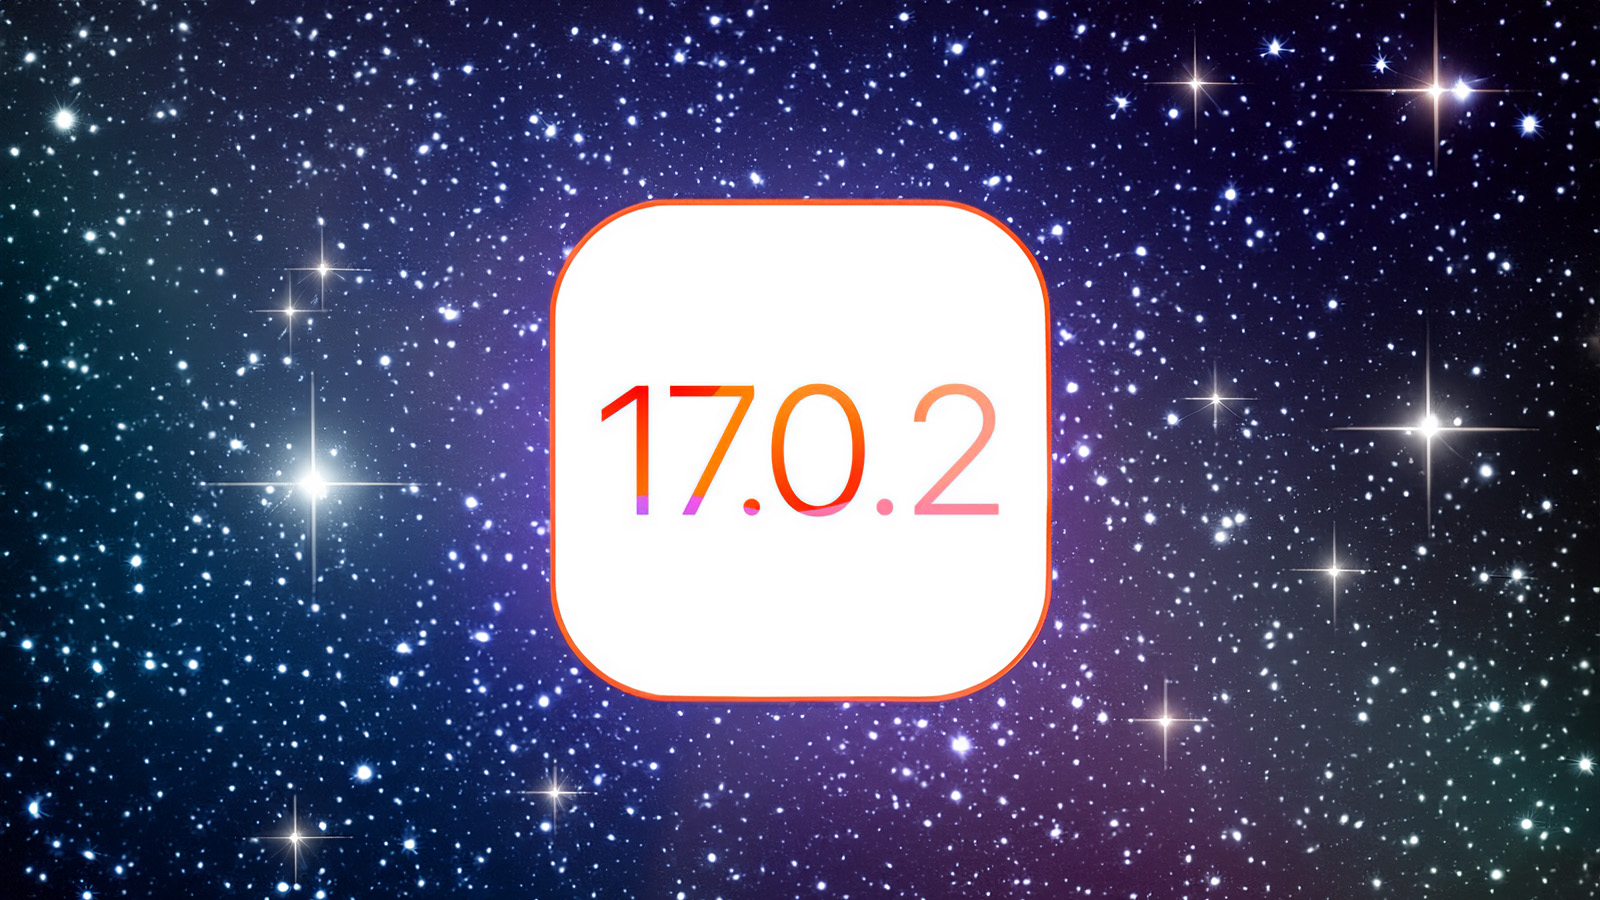 iPhoneIslam.com'dan, Apple ve iOS içeren 17 7 2 metinli yıldızlı duvar kağıdı.